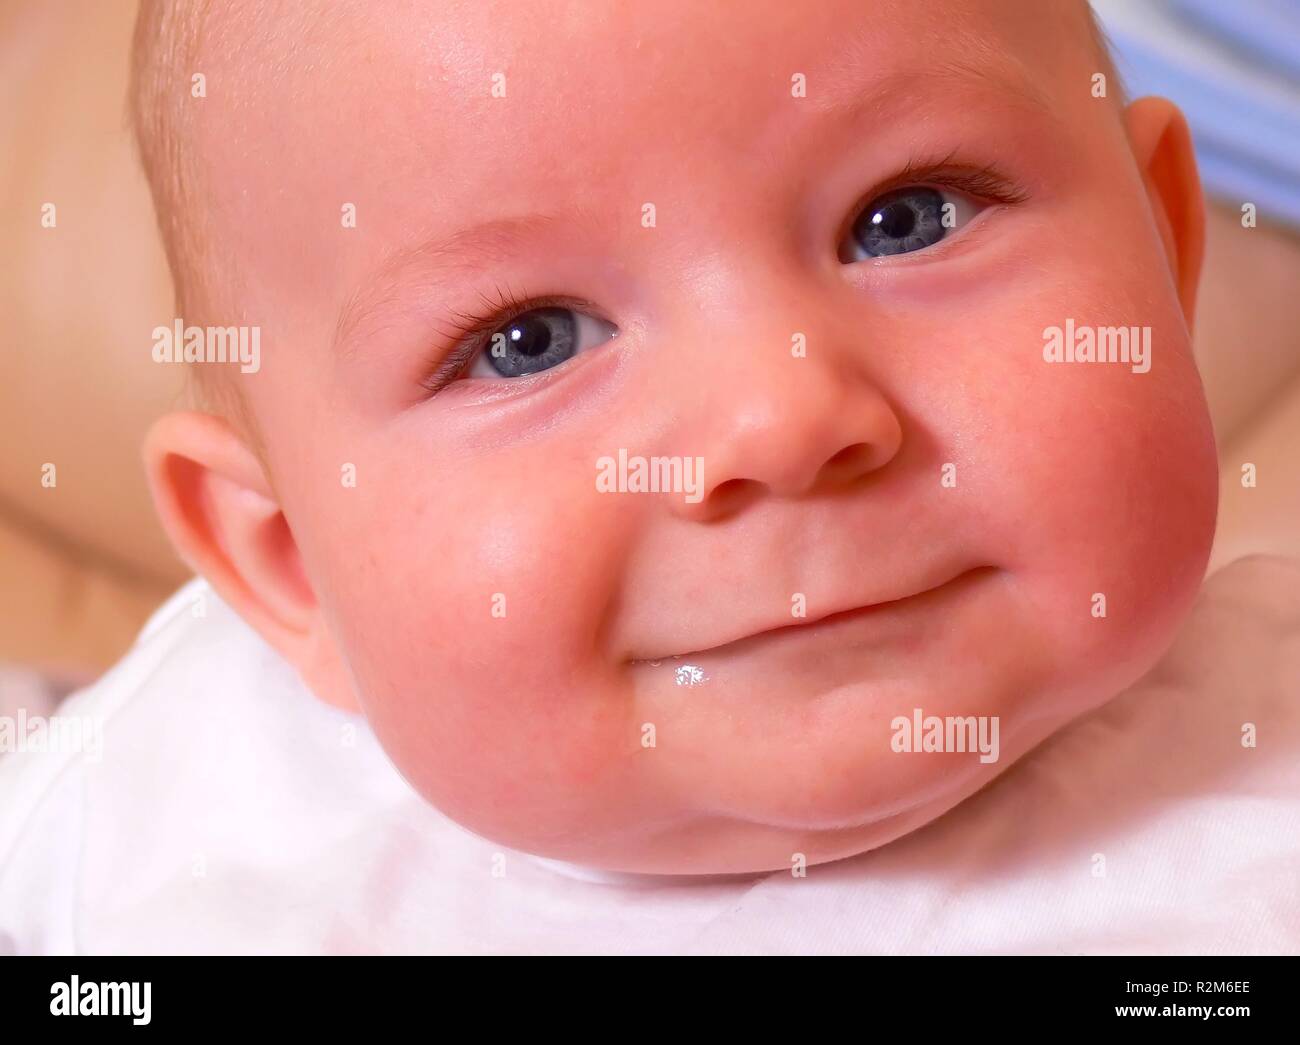 the baby smile joyful eyes Stock Photo